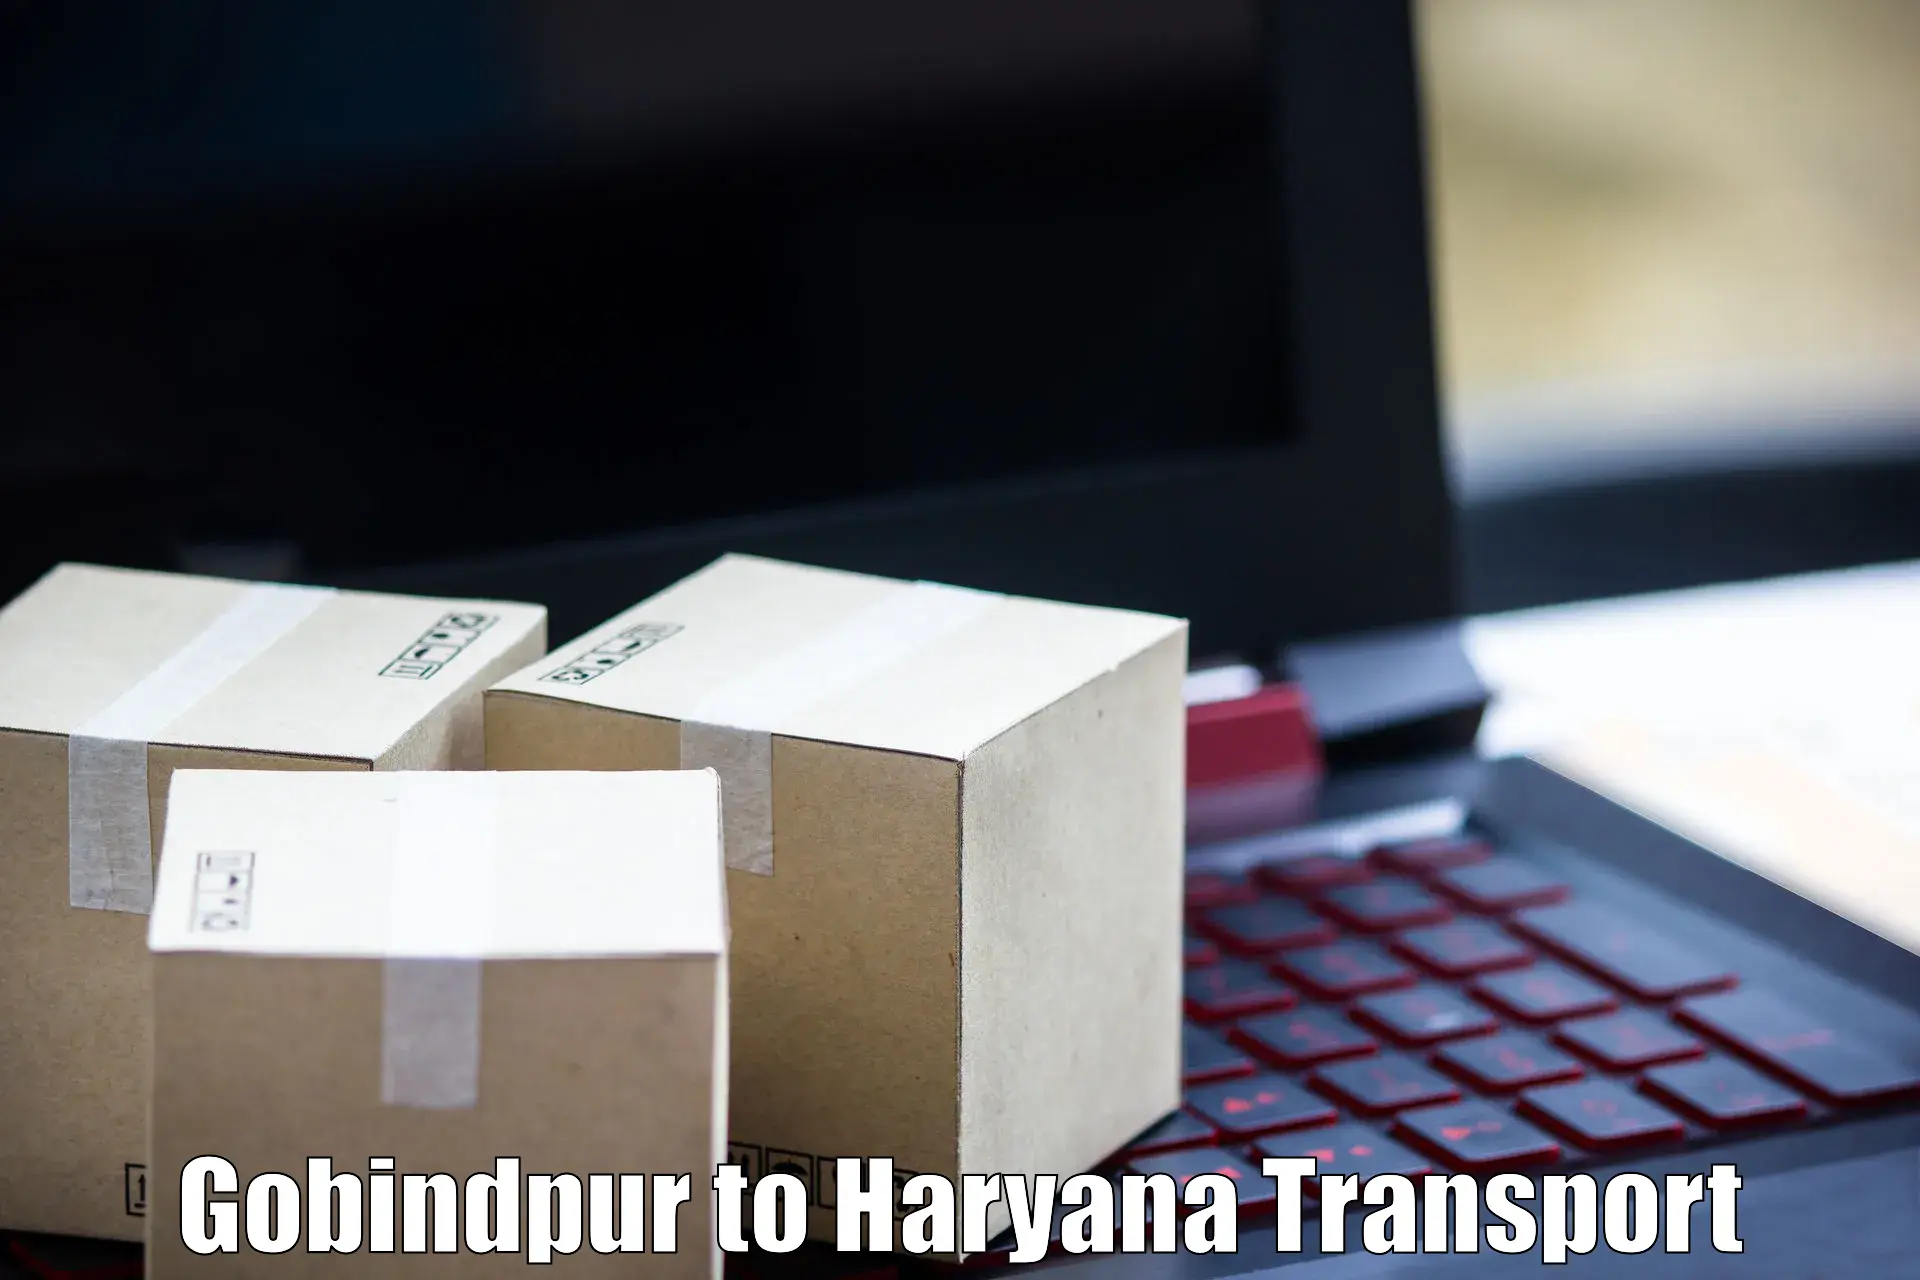 Online transport Gobindpur to IIIT Sonepat